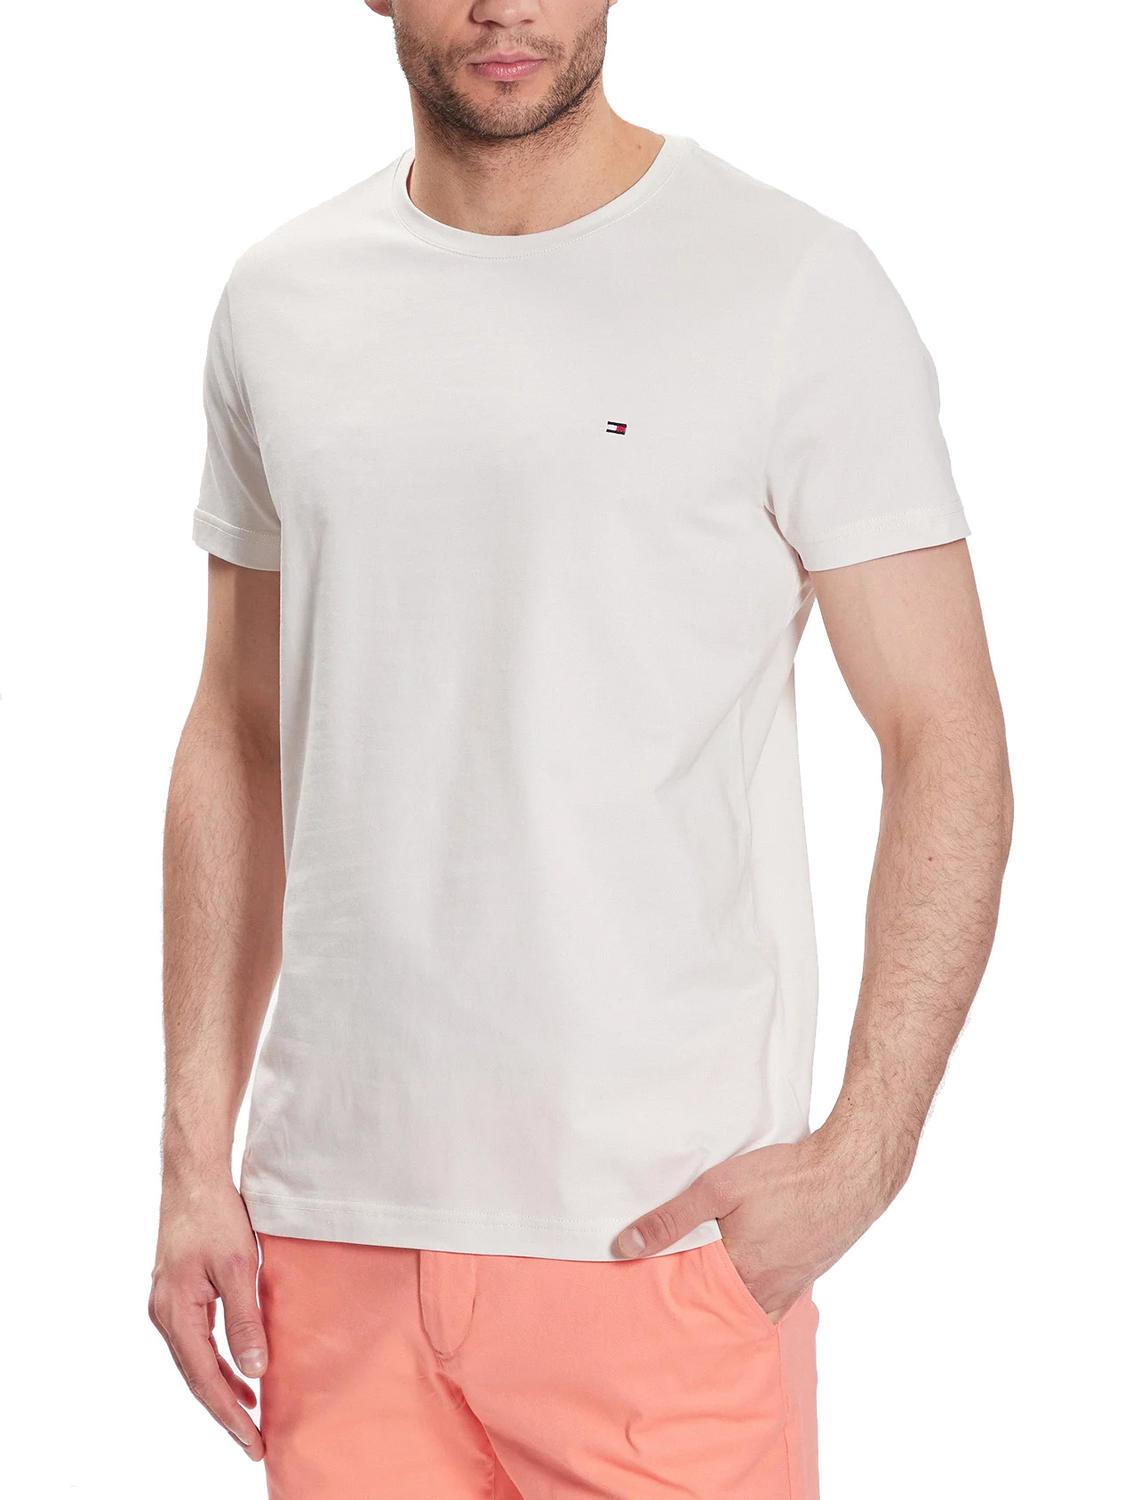 Hilfiger Camiseta Elástica Para Hombre Blanco Desgastado - ¡Compra A Precios